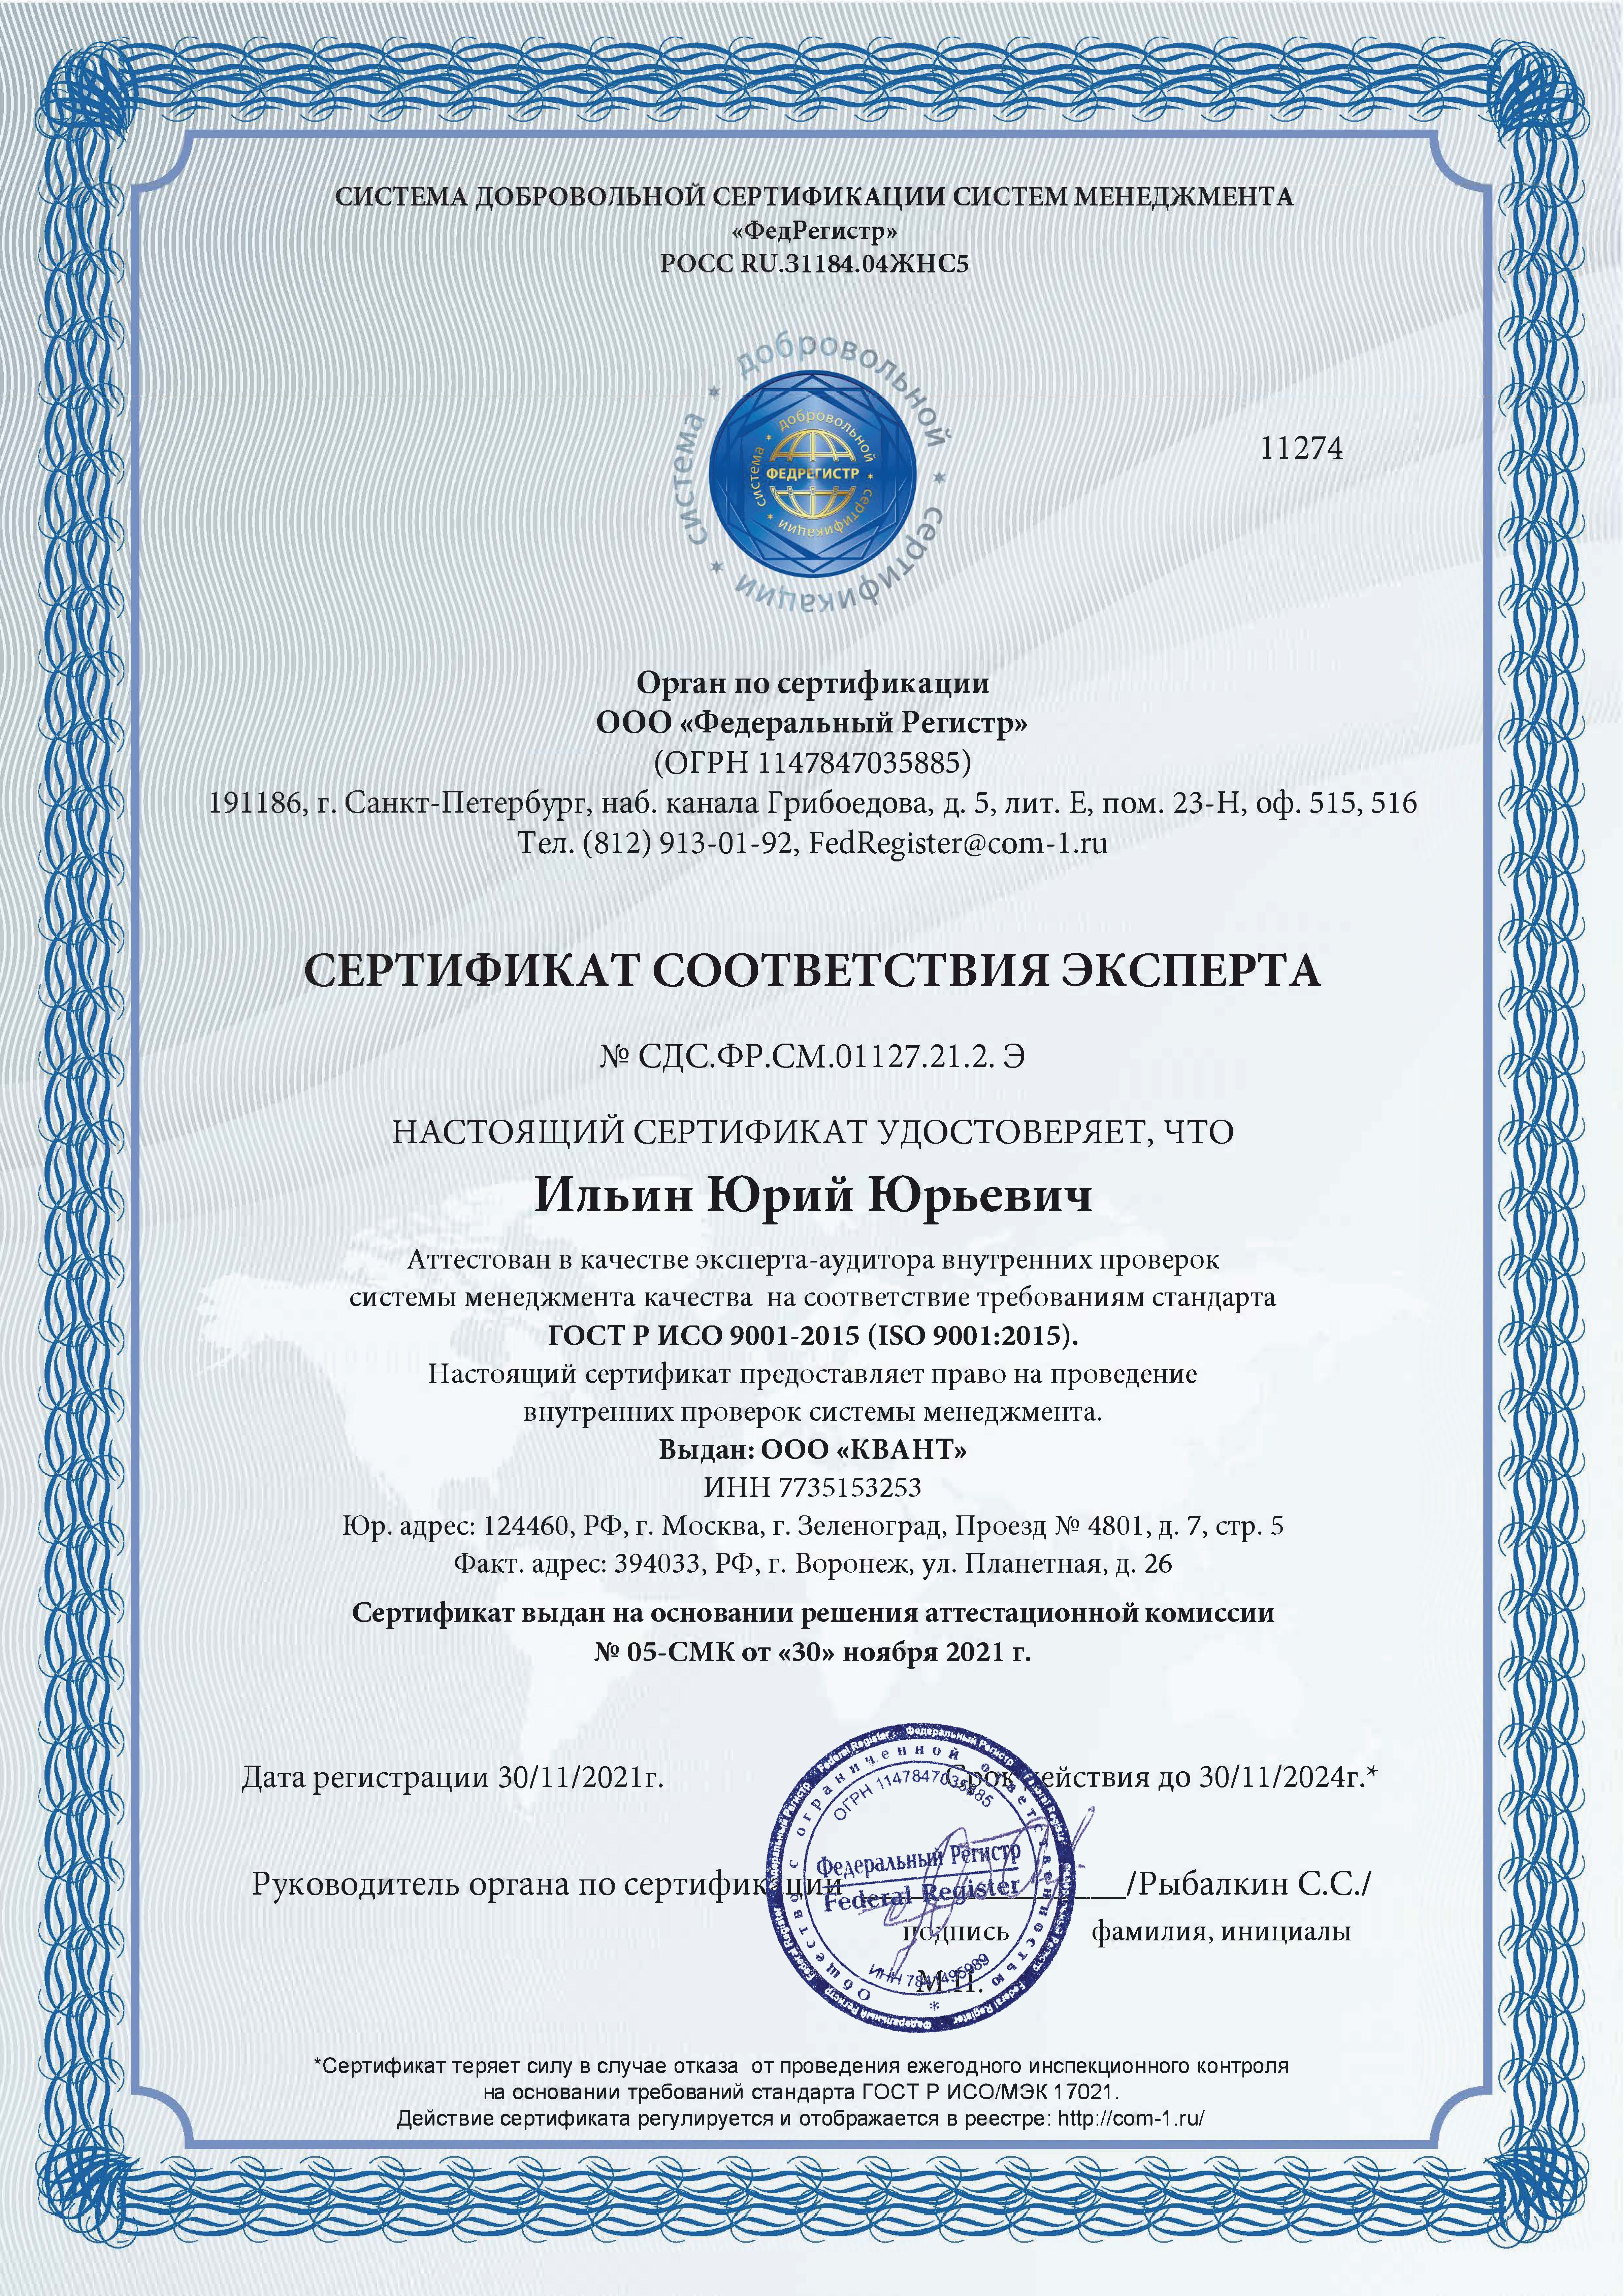 Сертификаты соответствия Экспертов системы менеджмента качества ГОСТ Р ИСО 9001-2015 (ISO 9001:2015)